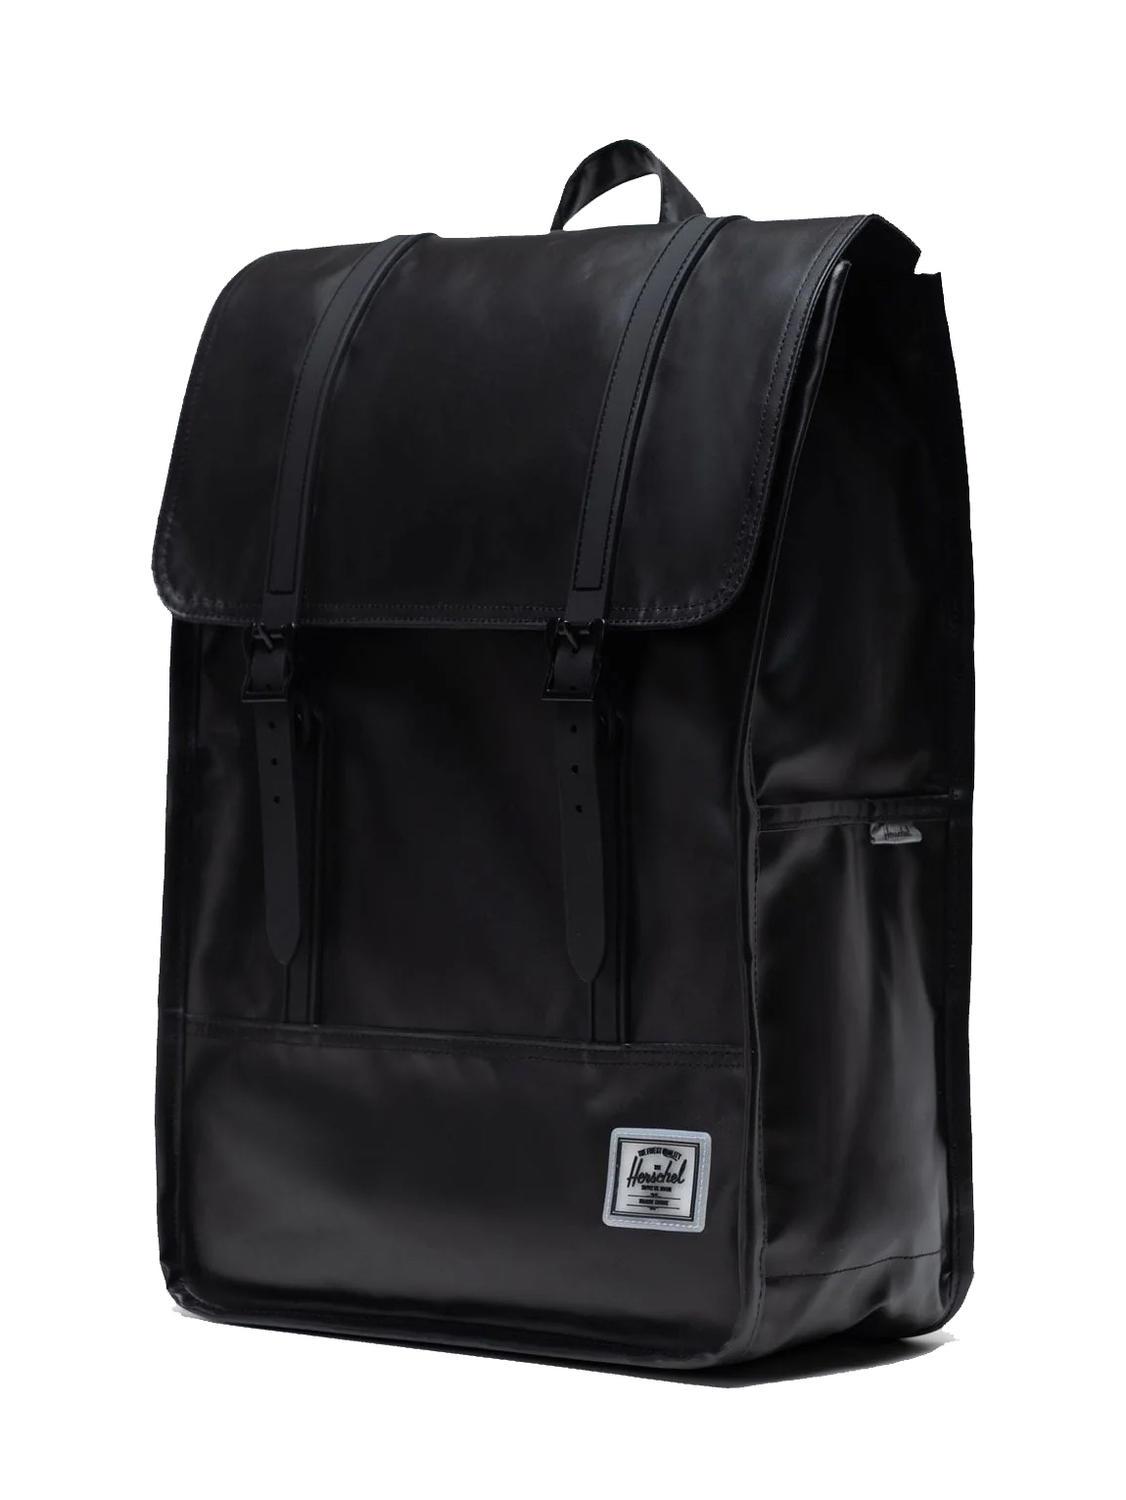 Herschel Survey Backpack Black - Buy At Outlet Prices!